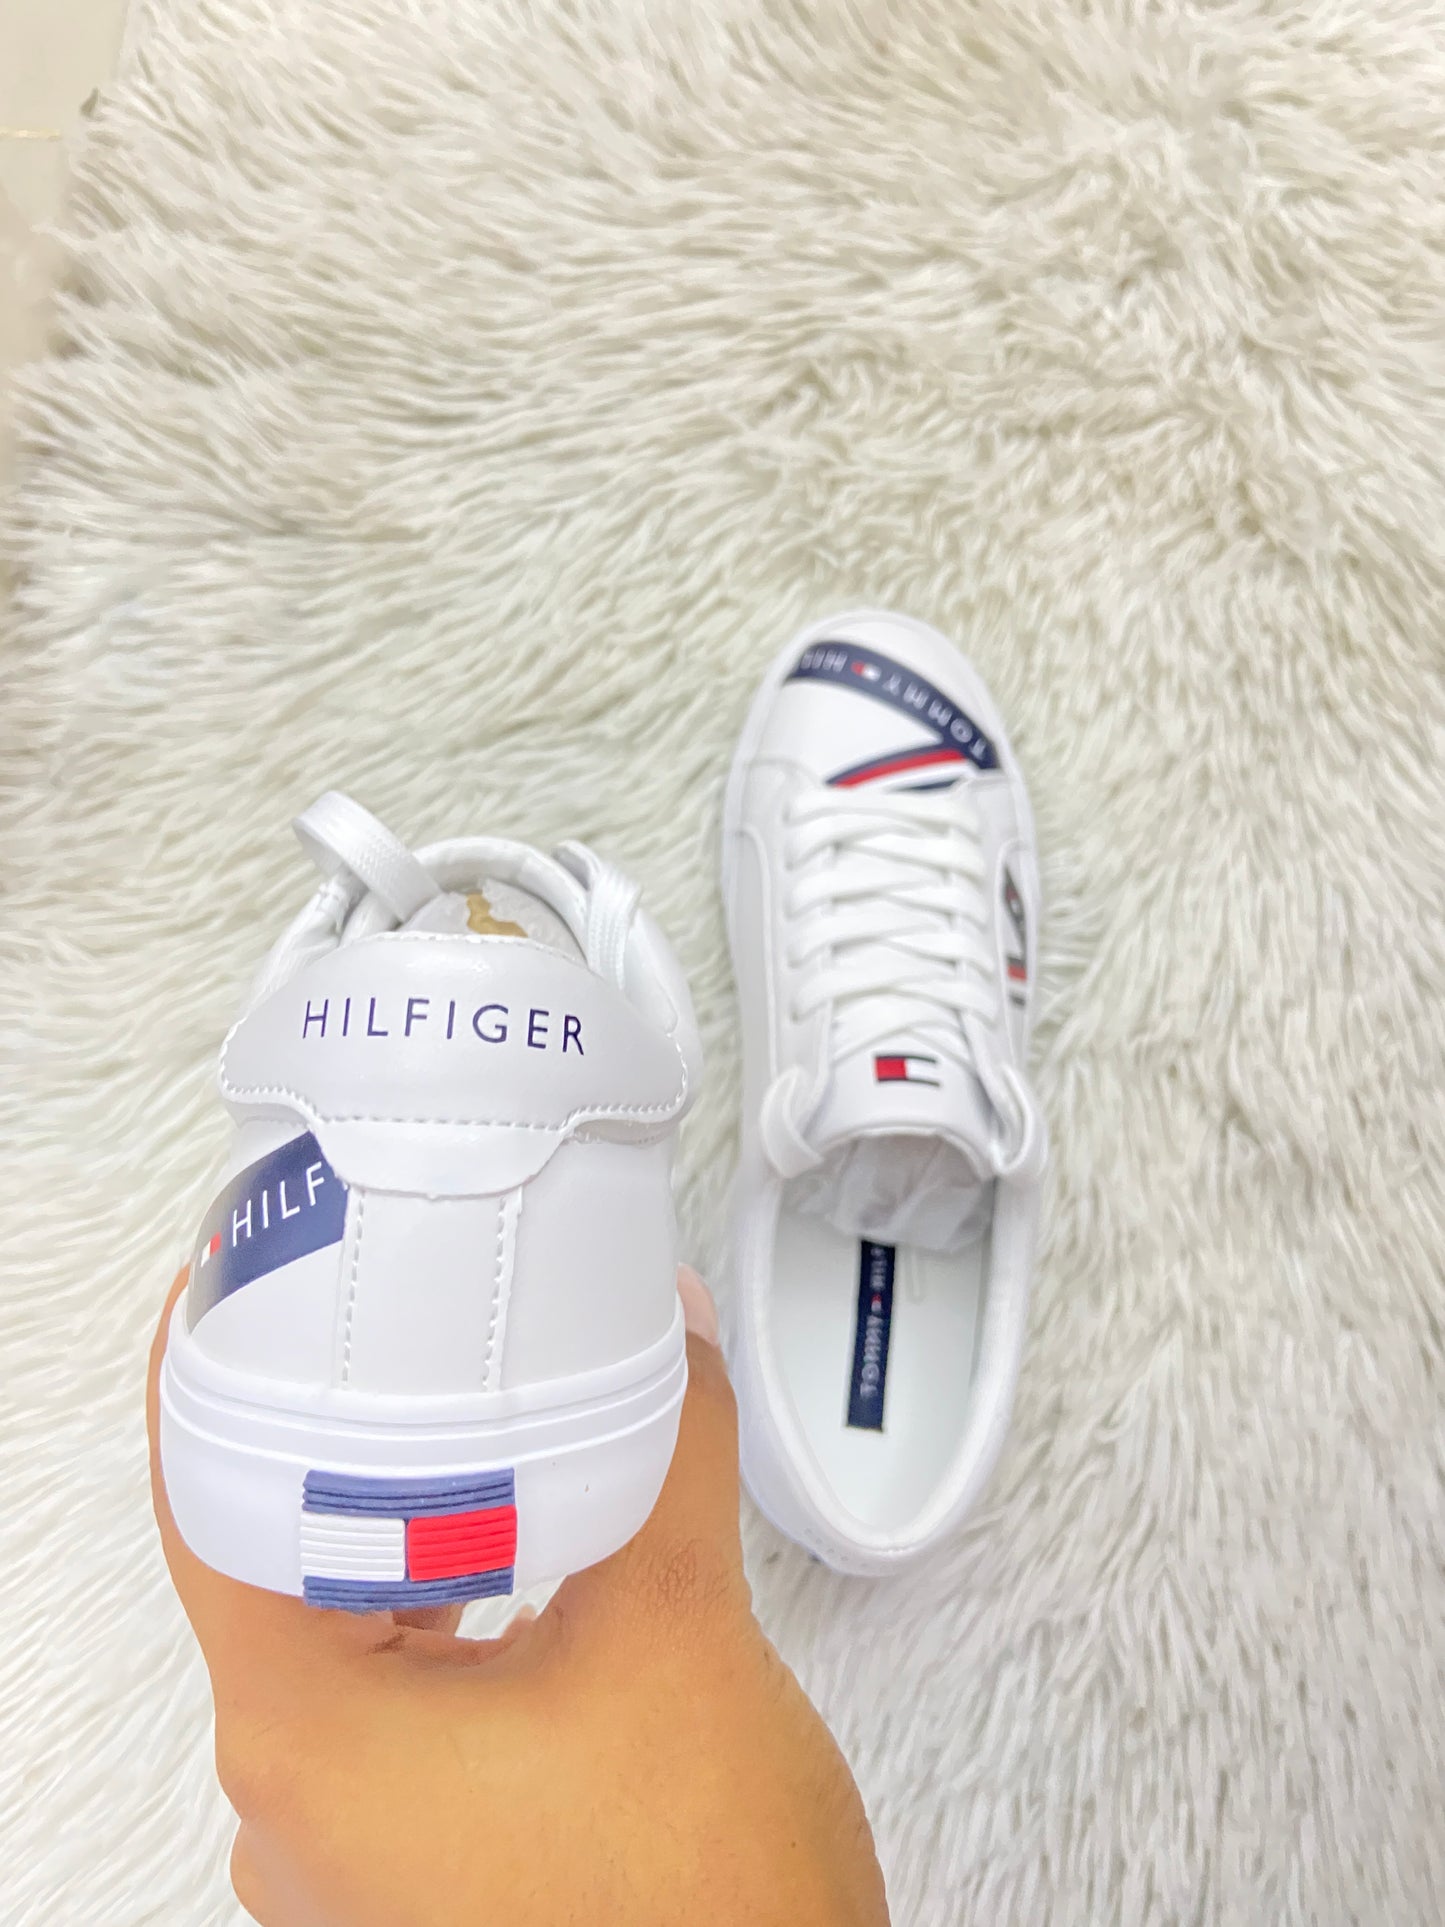 Tenis Tommy Hilfiger Original blanco con líneas en azul marino con letras Tommy Hilfiger en blanco y logotipo de la marca en la parte trasera.